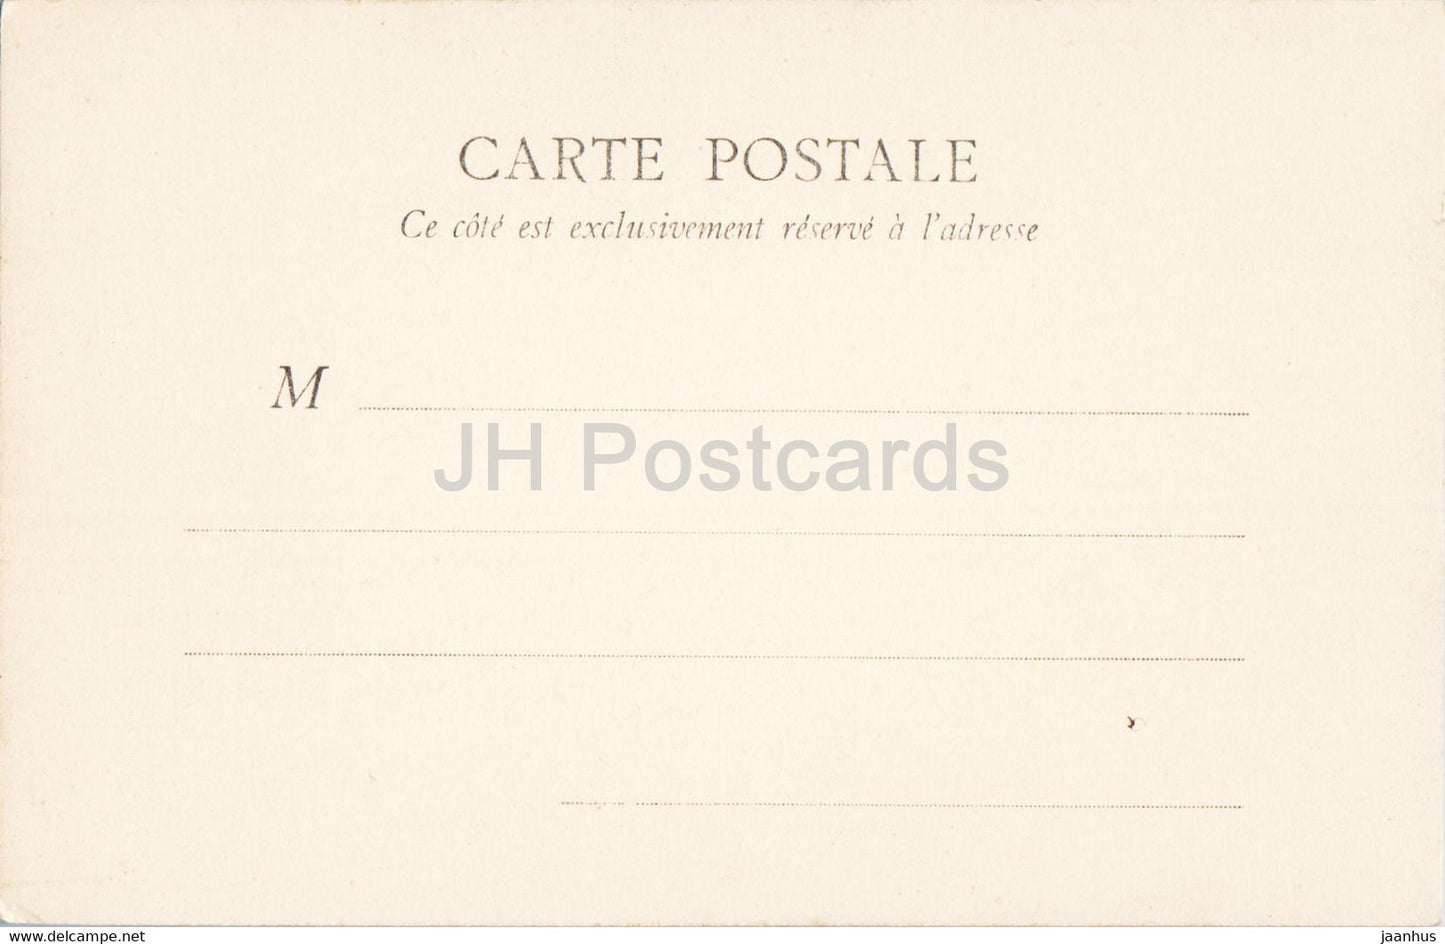 Fontainebleau - Chambre a coucher de Marie Antoinette - carte postale ancienne - France - inutilisée